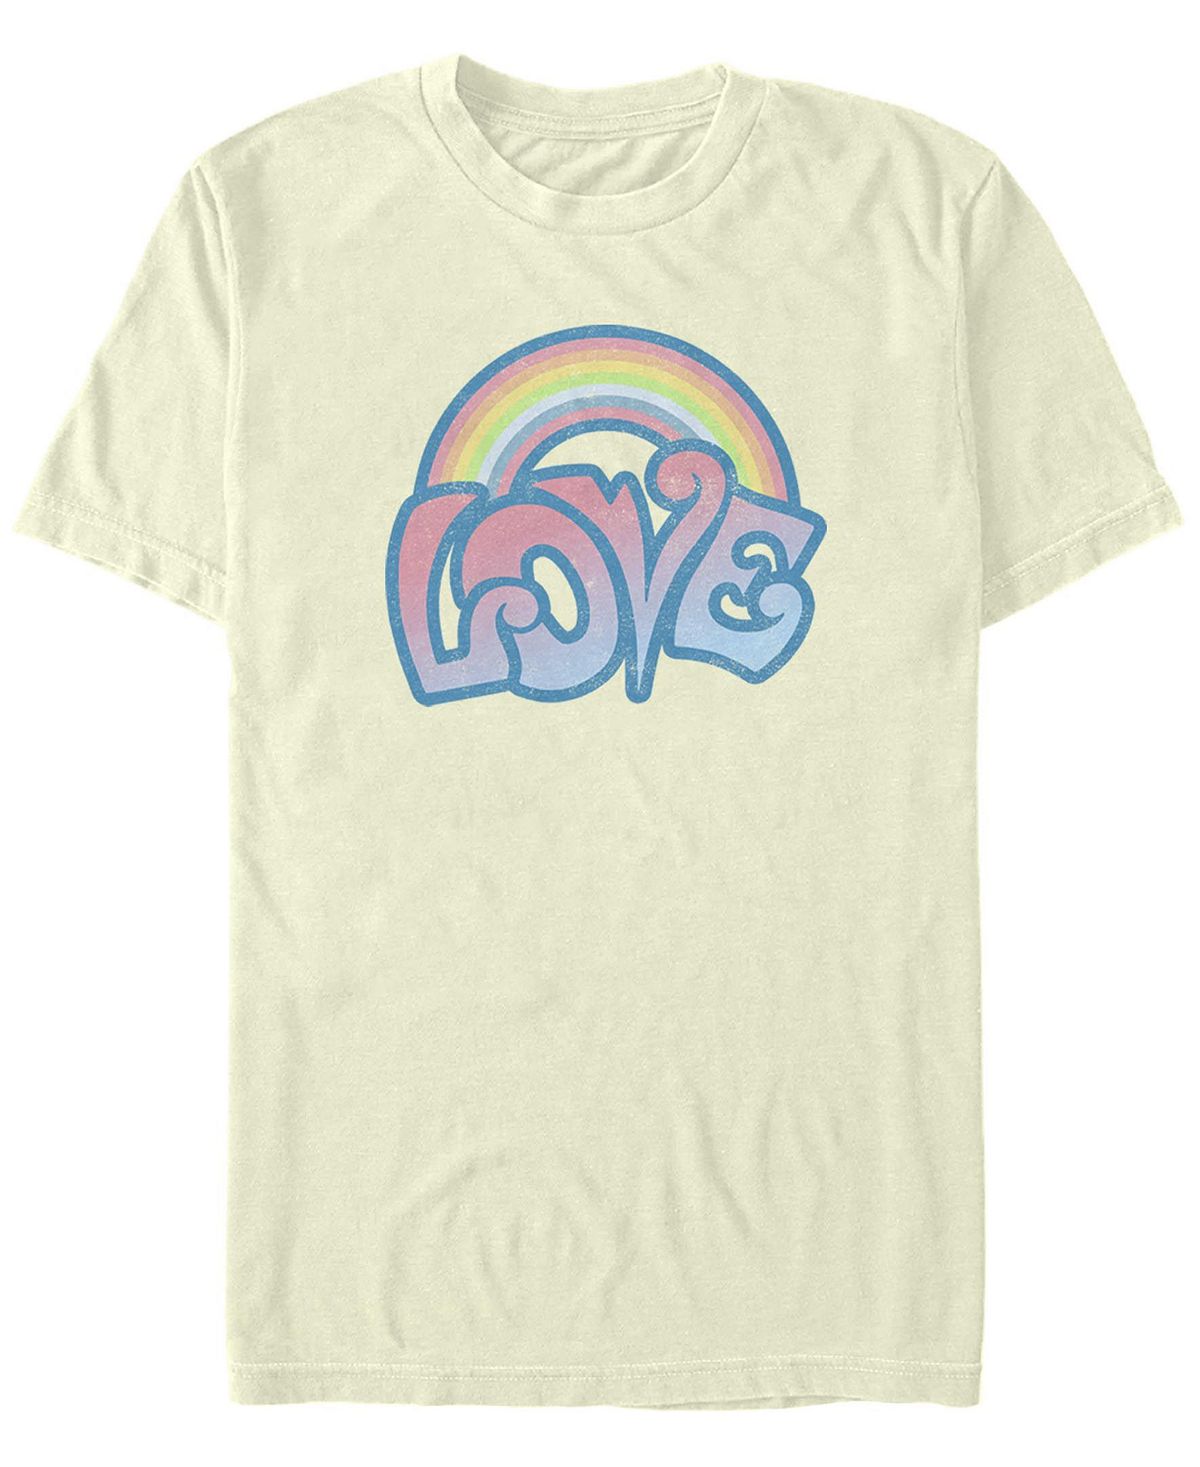 Мужская футболка с круглым вырезом love rainbow с короткими рукавами Fifth Sun мужская футболка с короткими рукавами rainbow monster box up scooby doo fifth sun черный